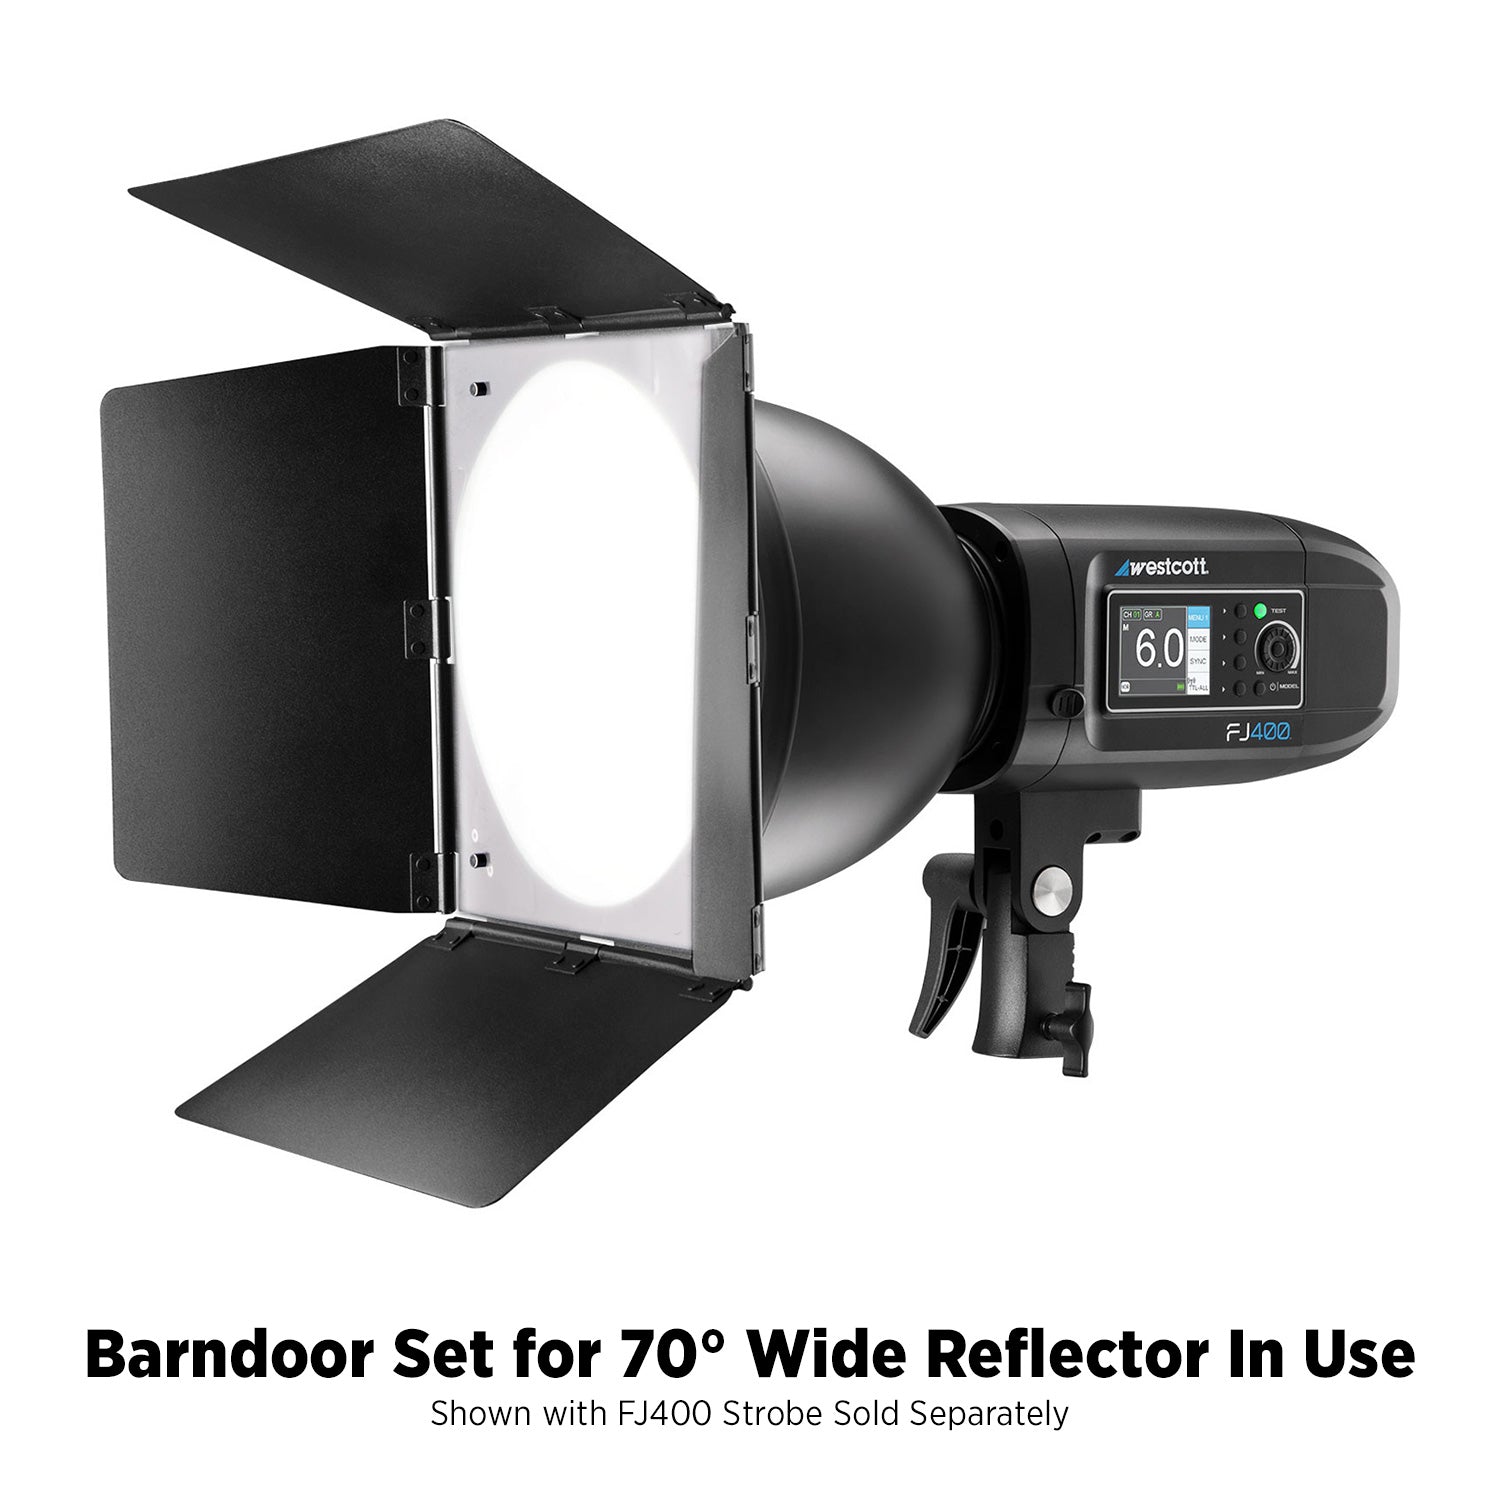 Barndoor Set for 70-Degree Wide Reflector